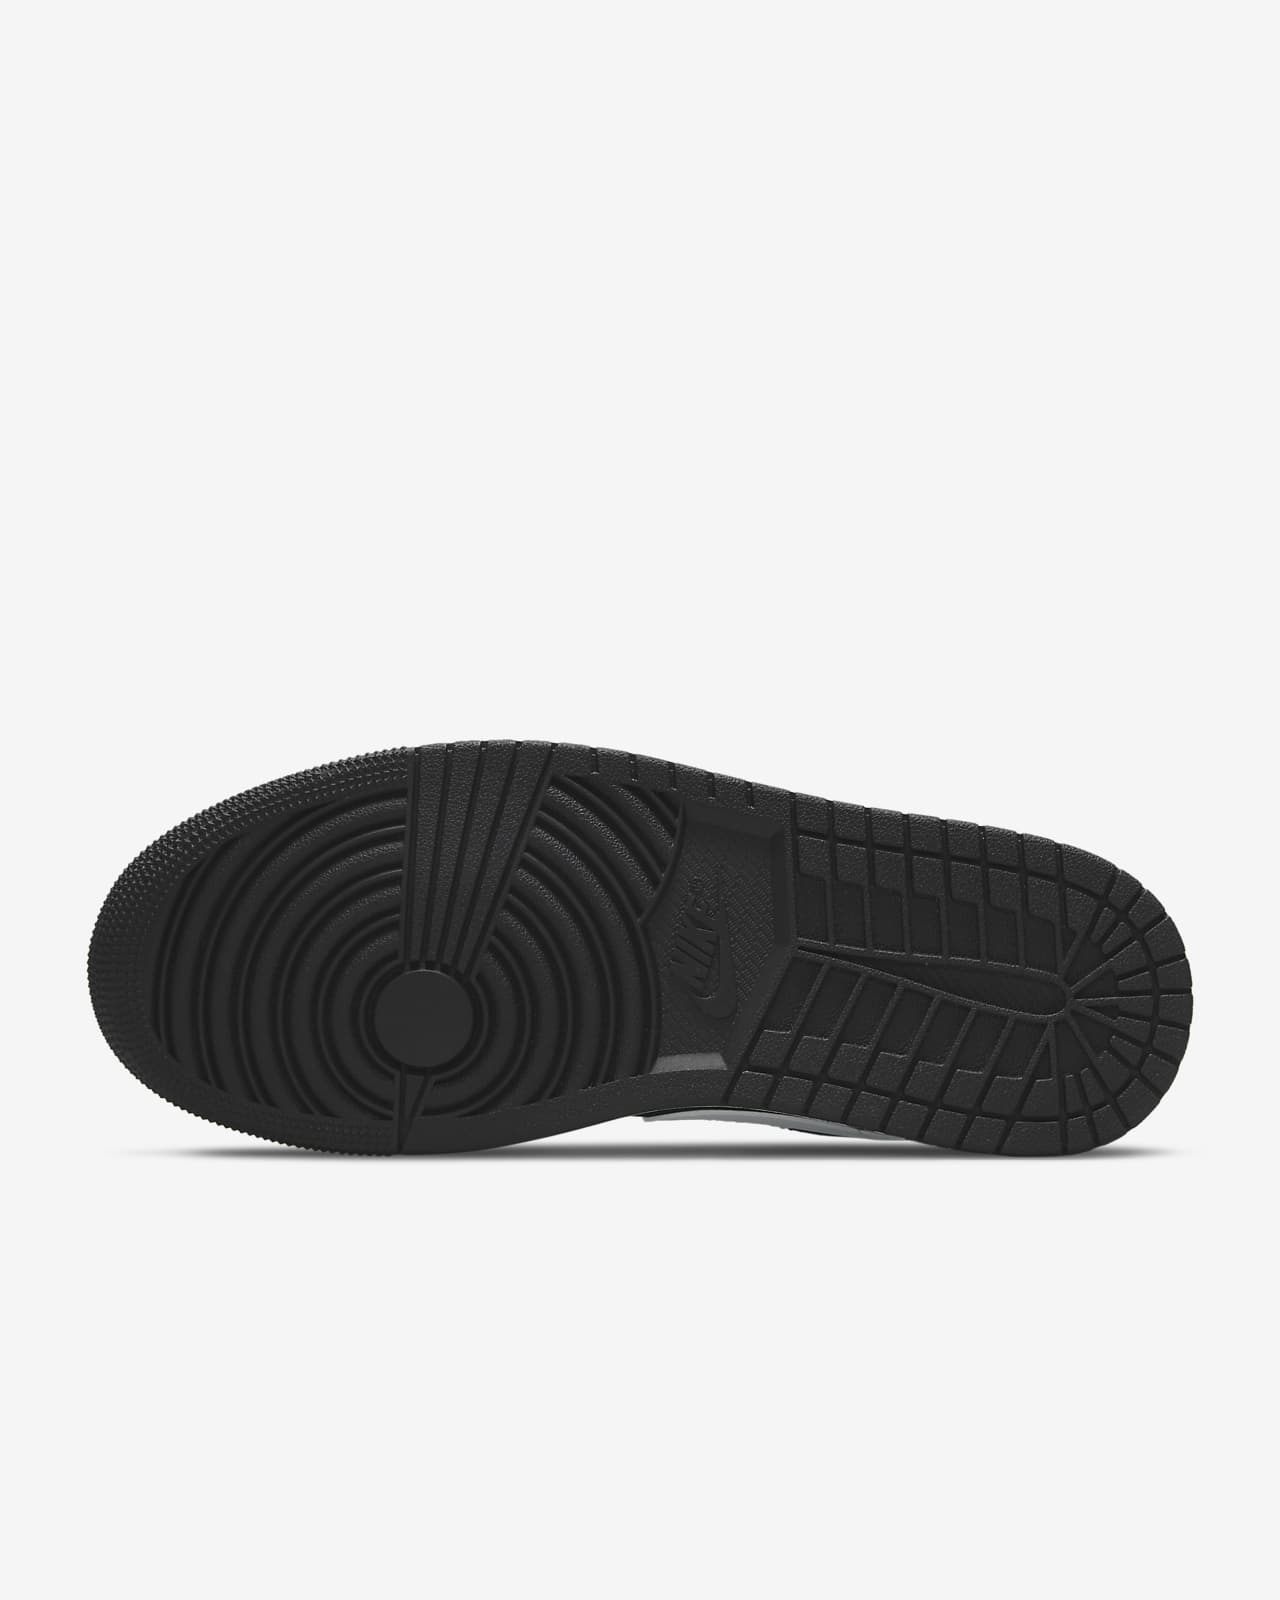 Air Jordan 1 Low SE Women's Shoes. Nike LU